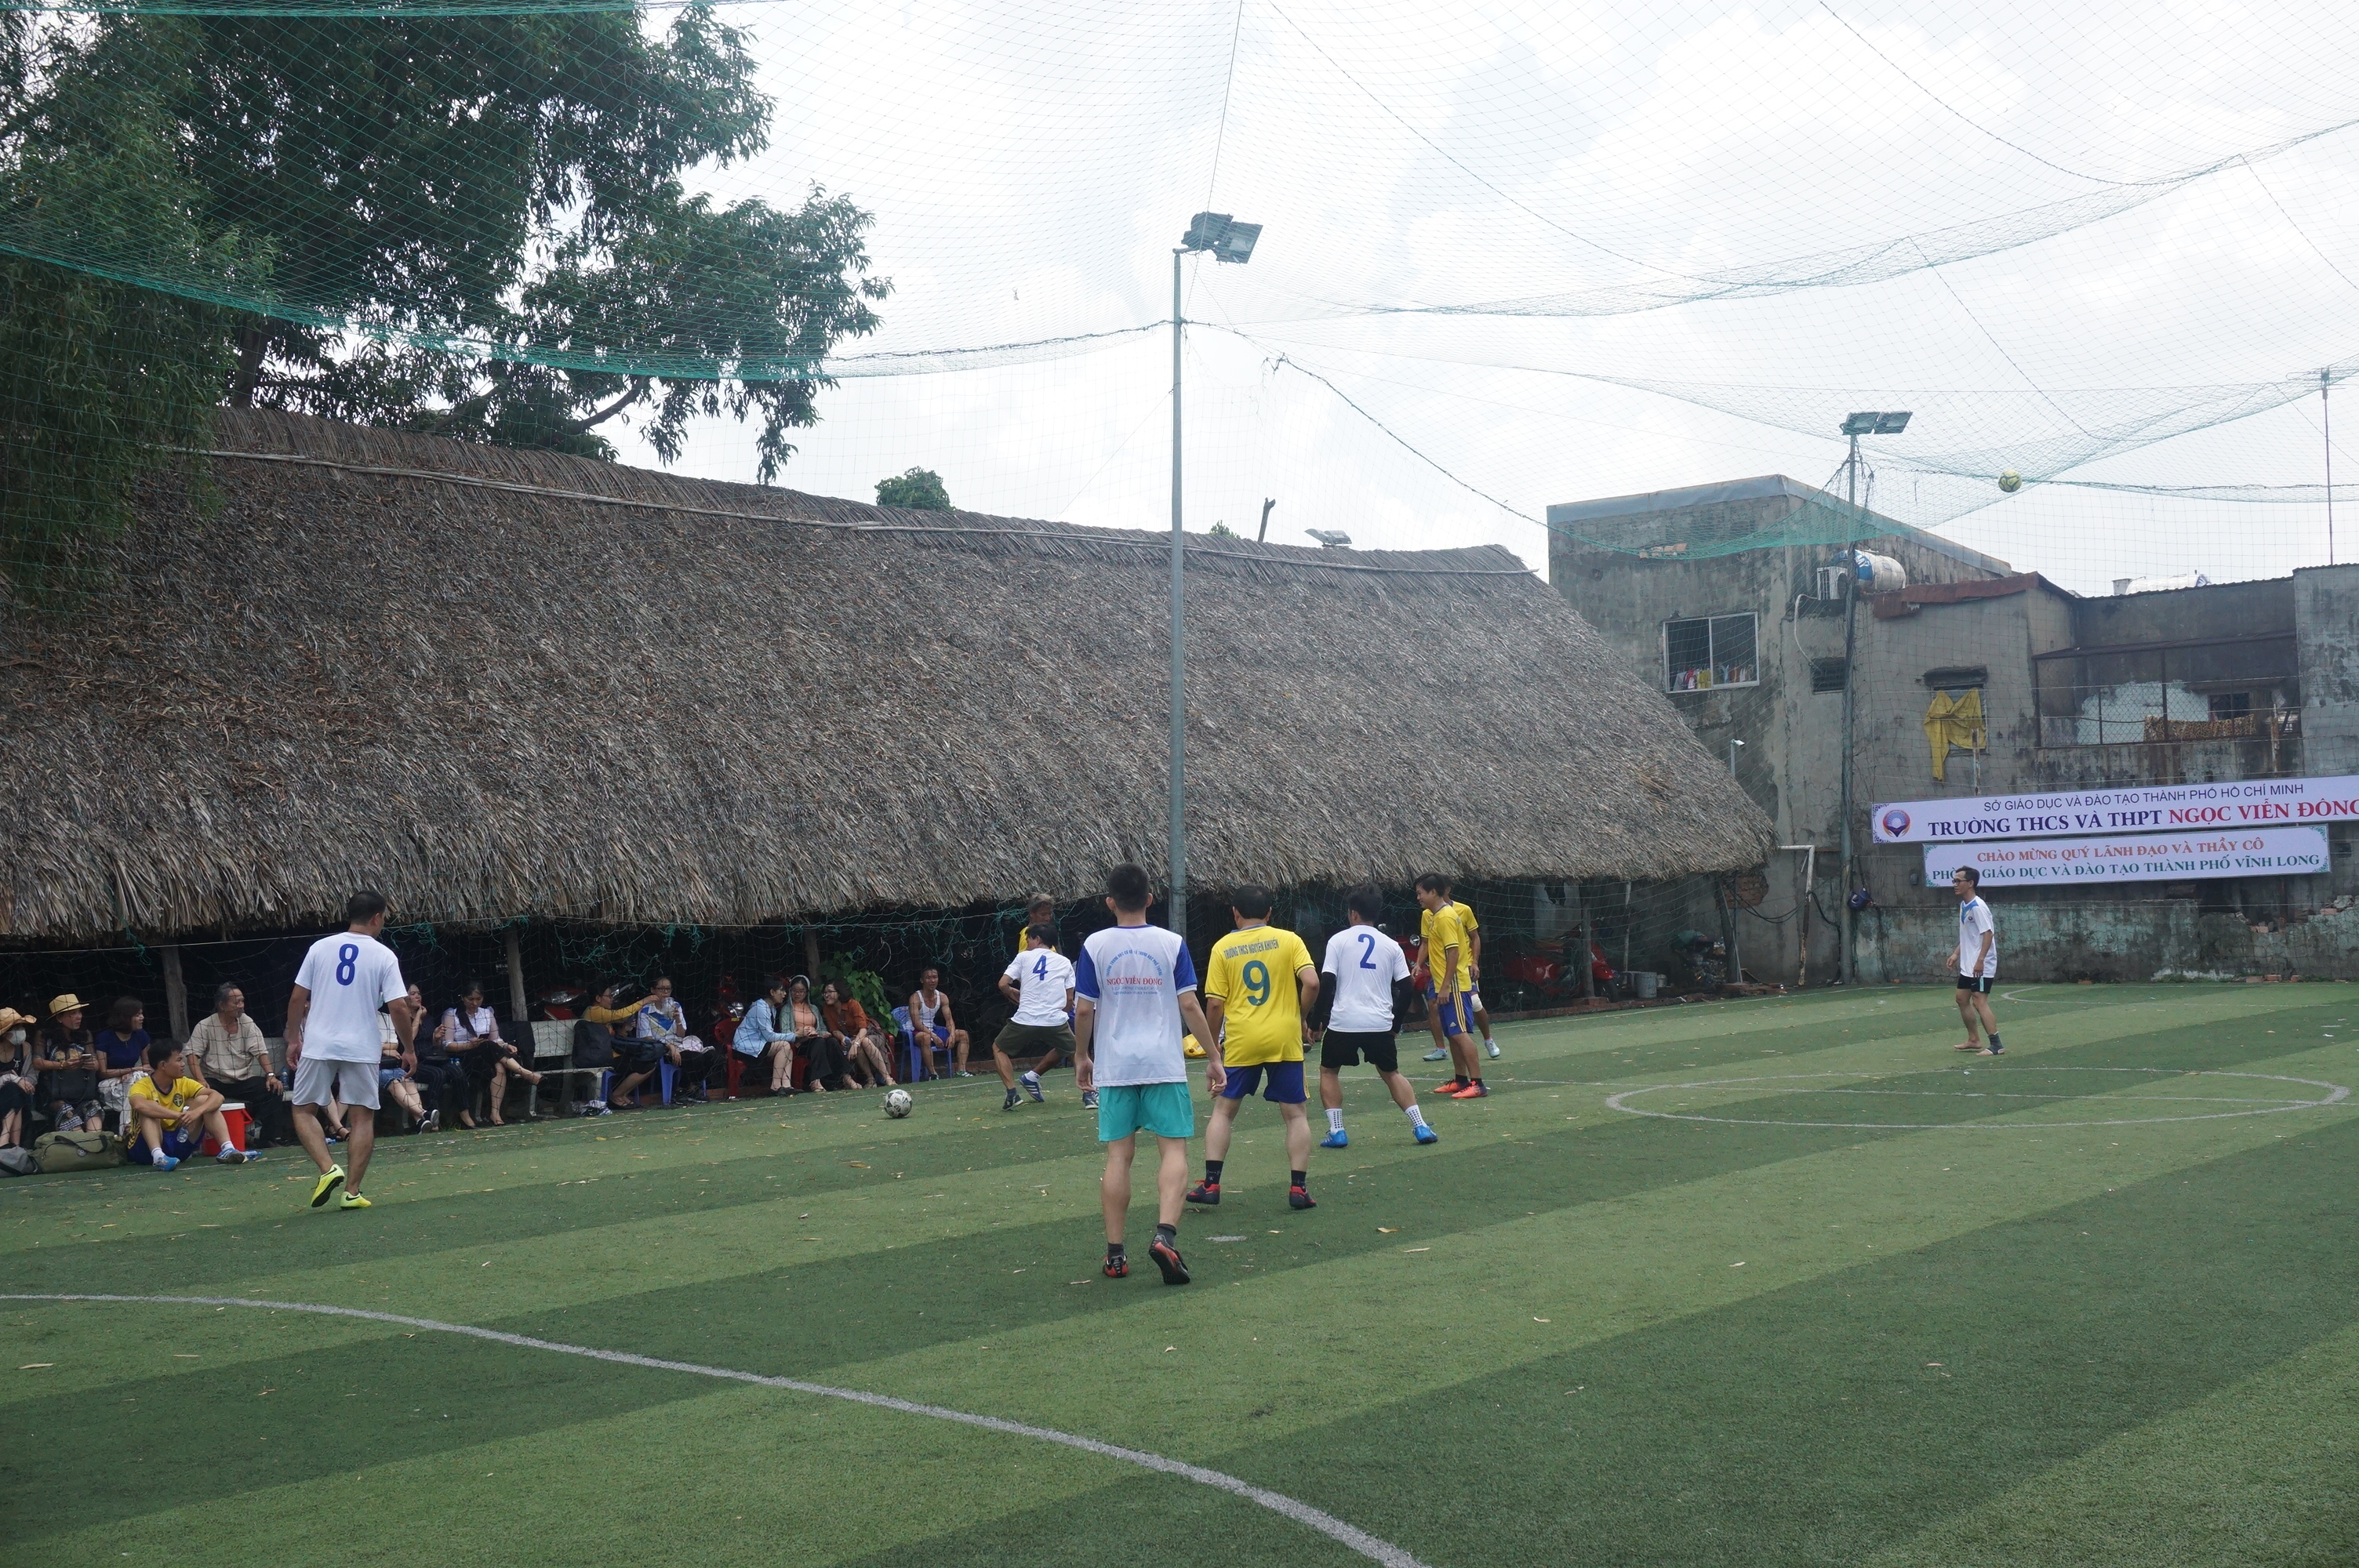 Giao lưu văn hóa và thể dục thể thao giữa trường THCS và THPT Ngọc Viễn Đông và Phòng giáo dục tp. Vĩnh Long